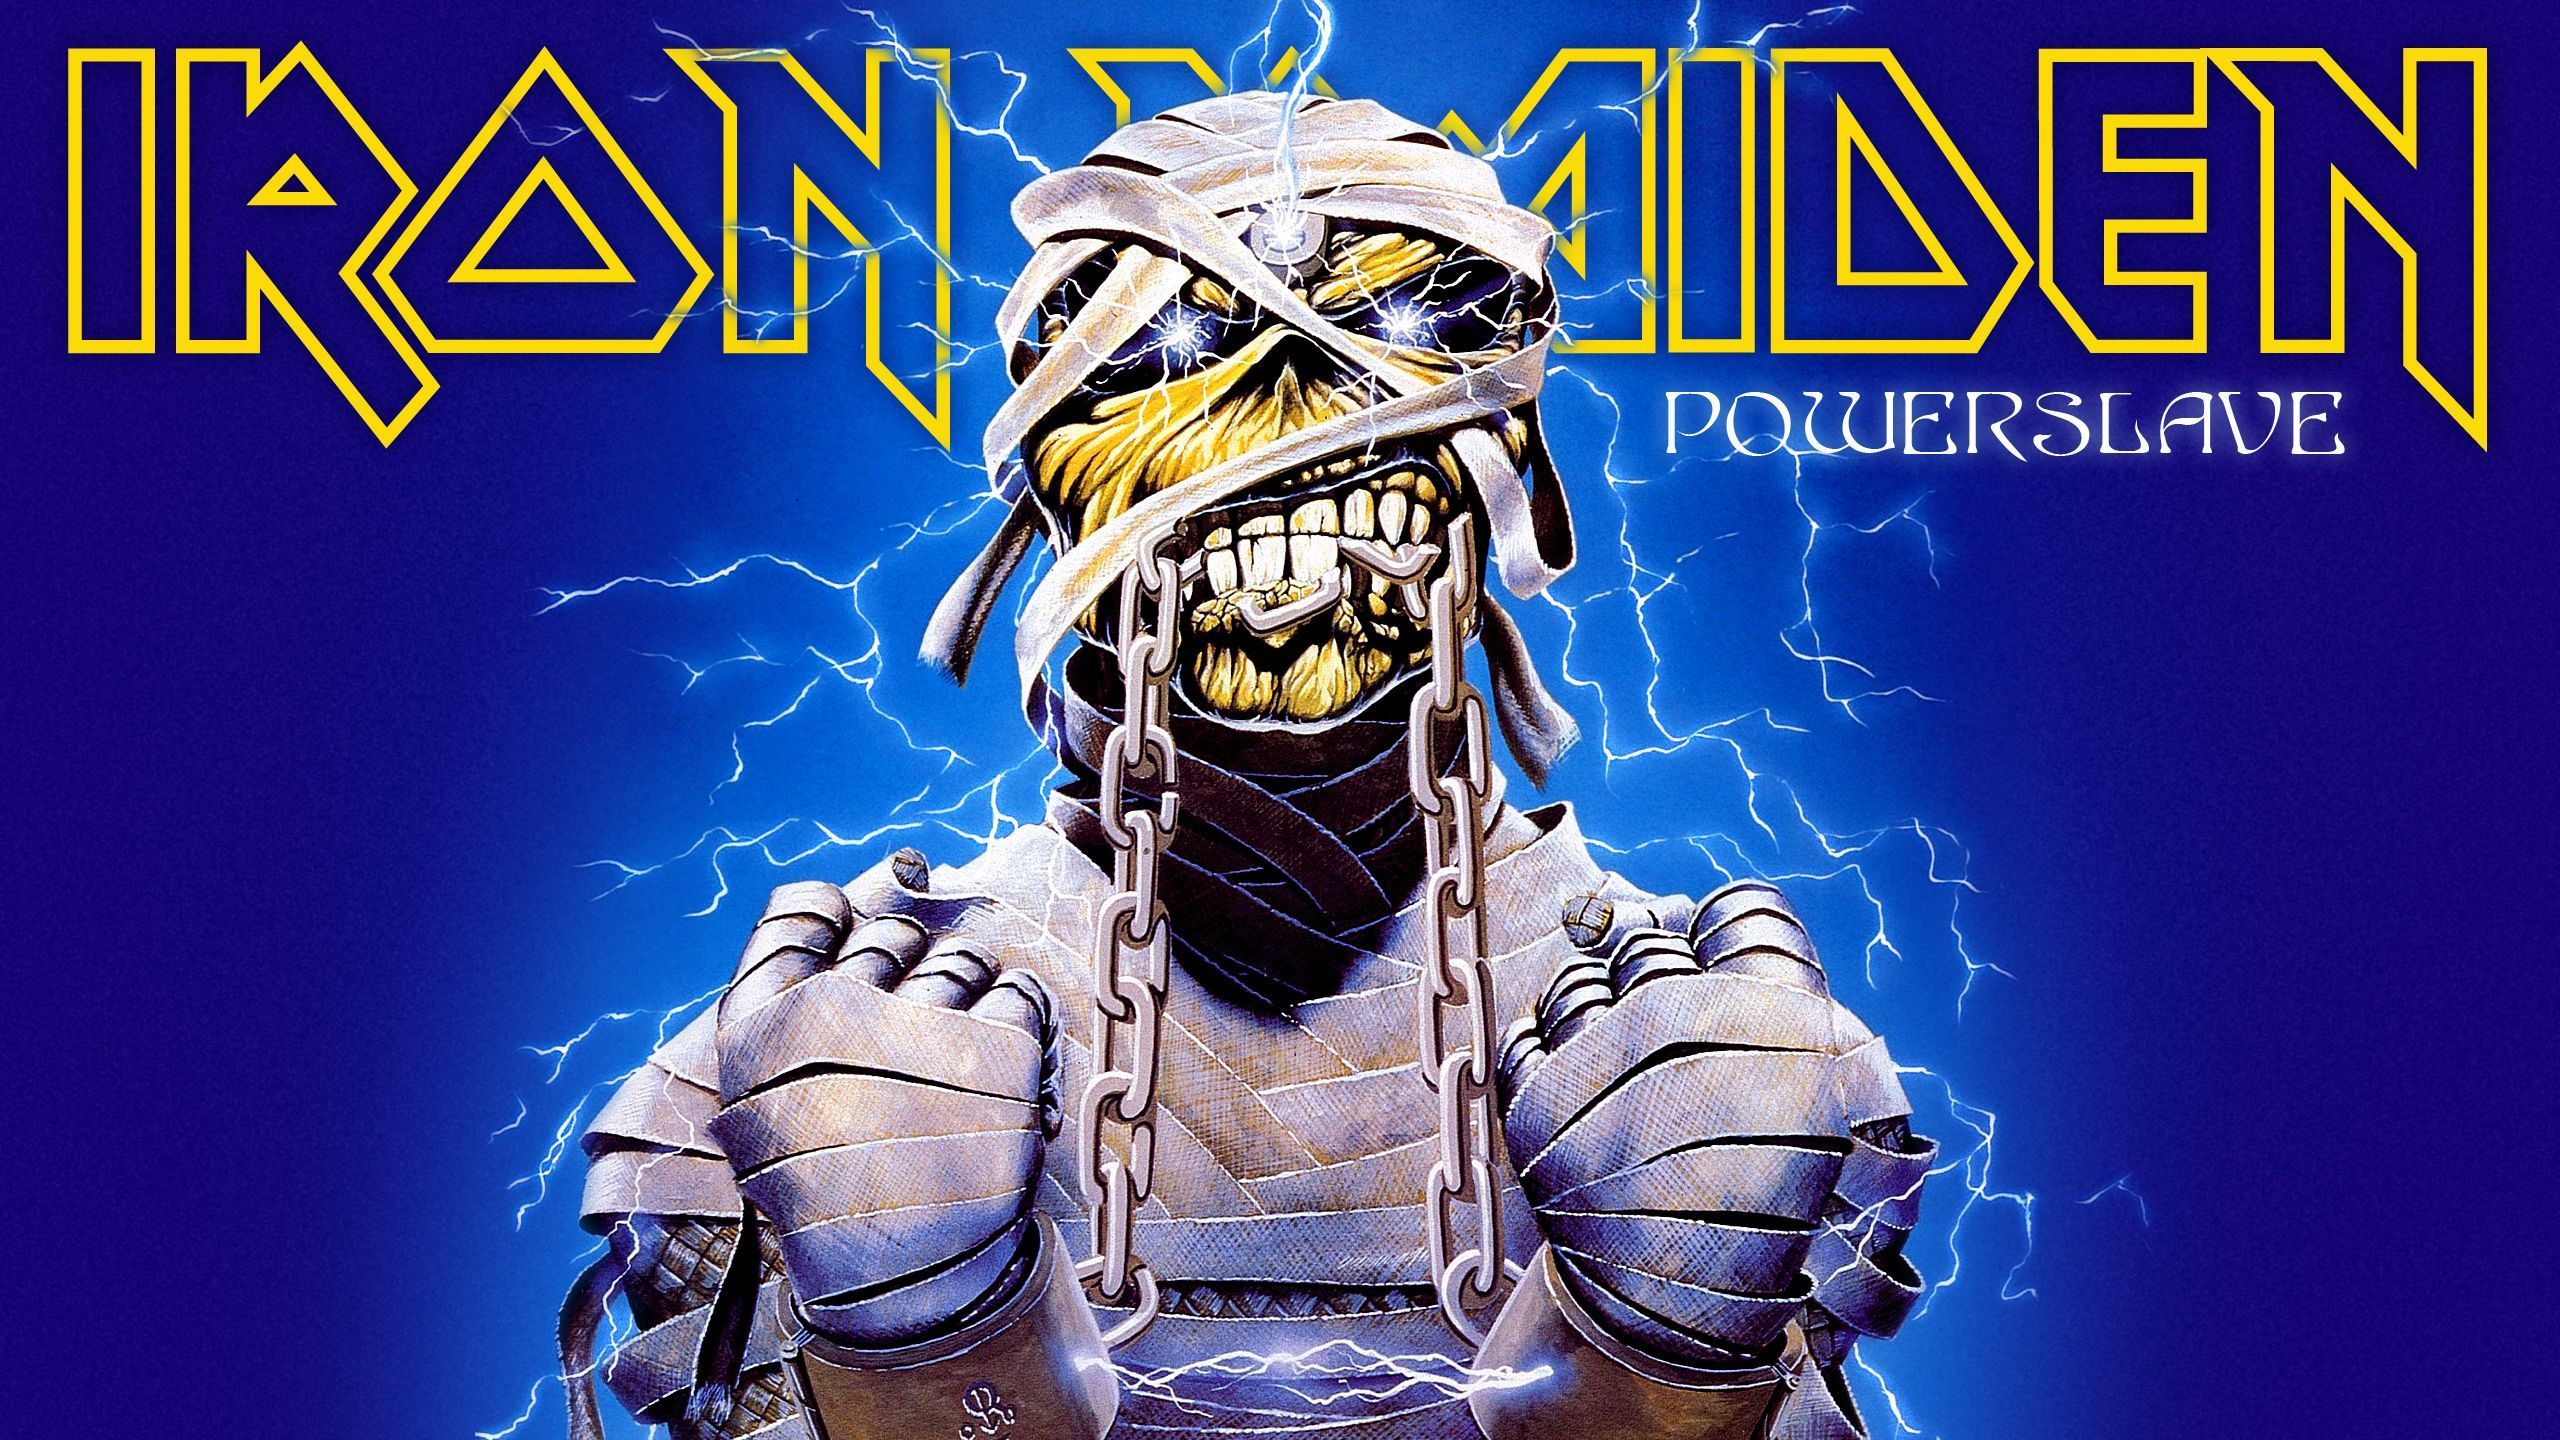 Iron Maiden eddie futuristic sci-fi sci heavy metal f wallpaper ...